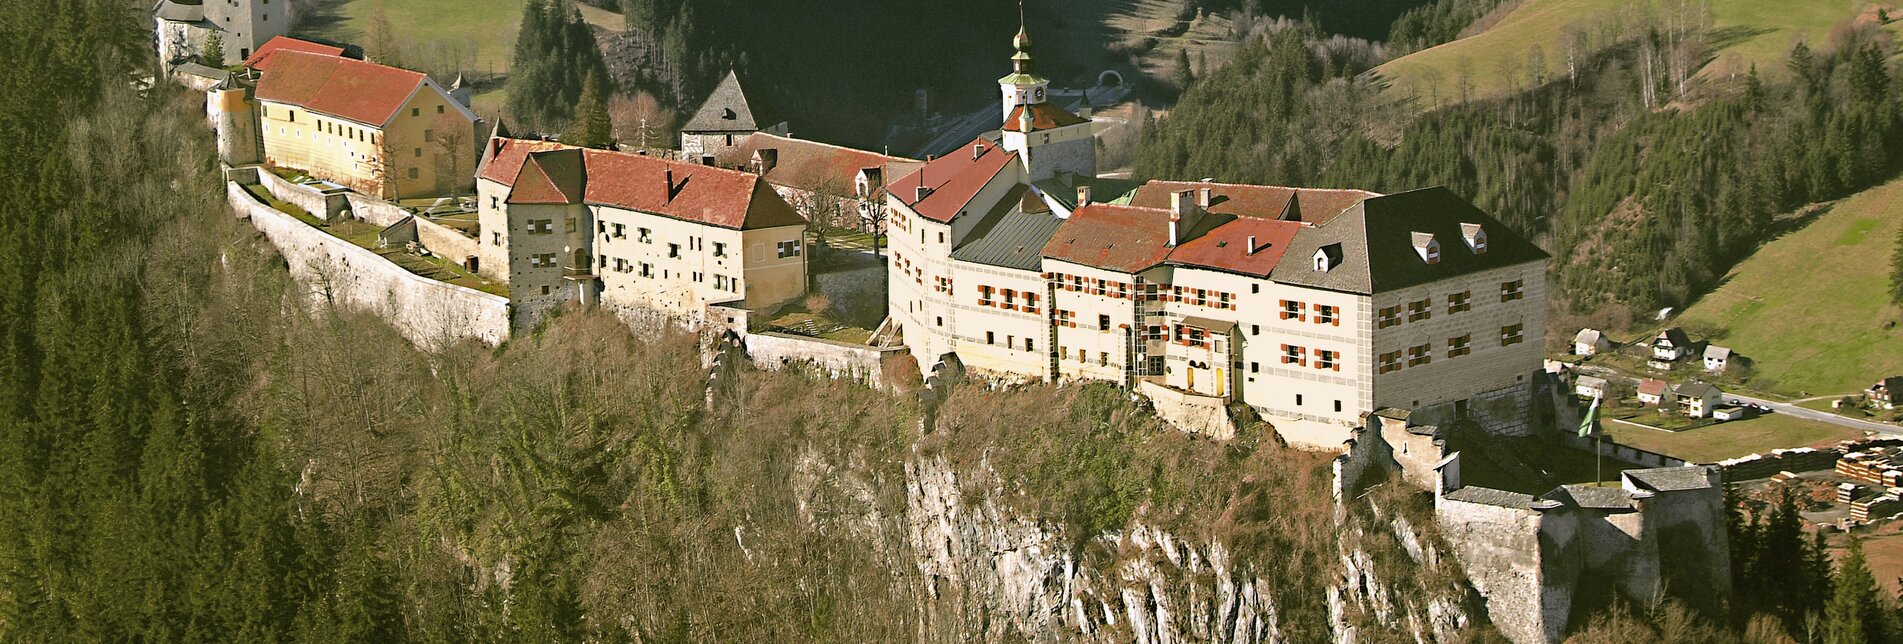 Burg Strechau | © Boesch Privatstiftung